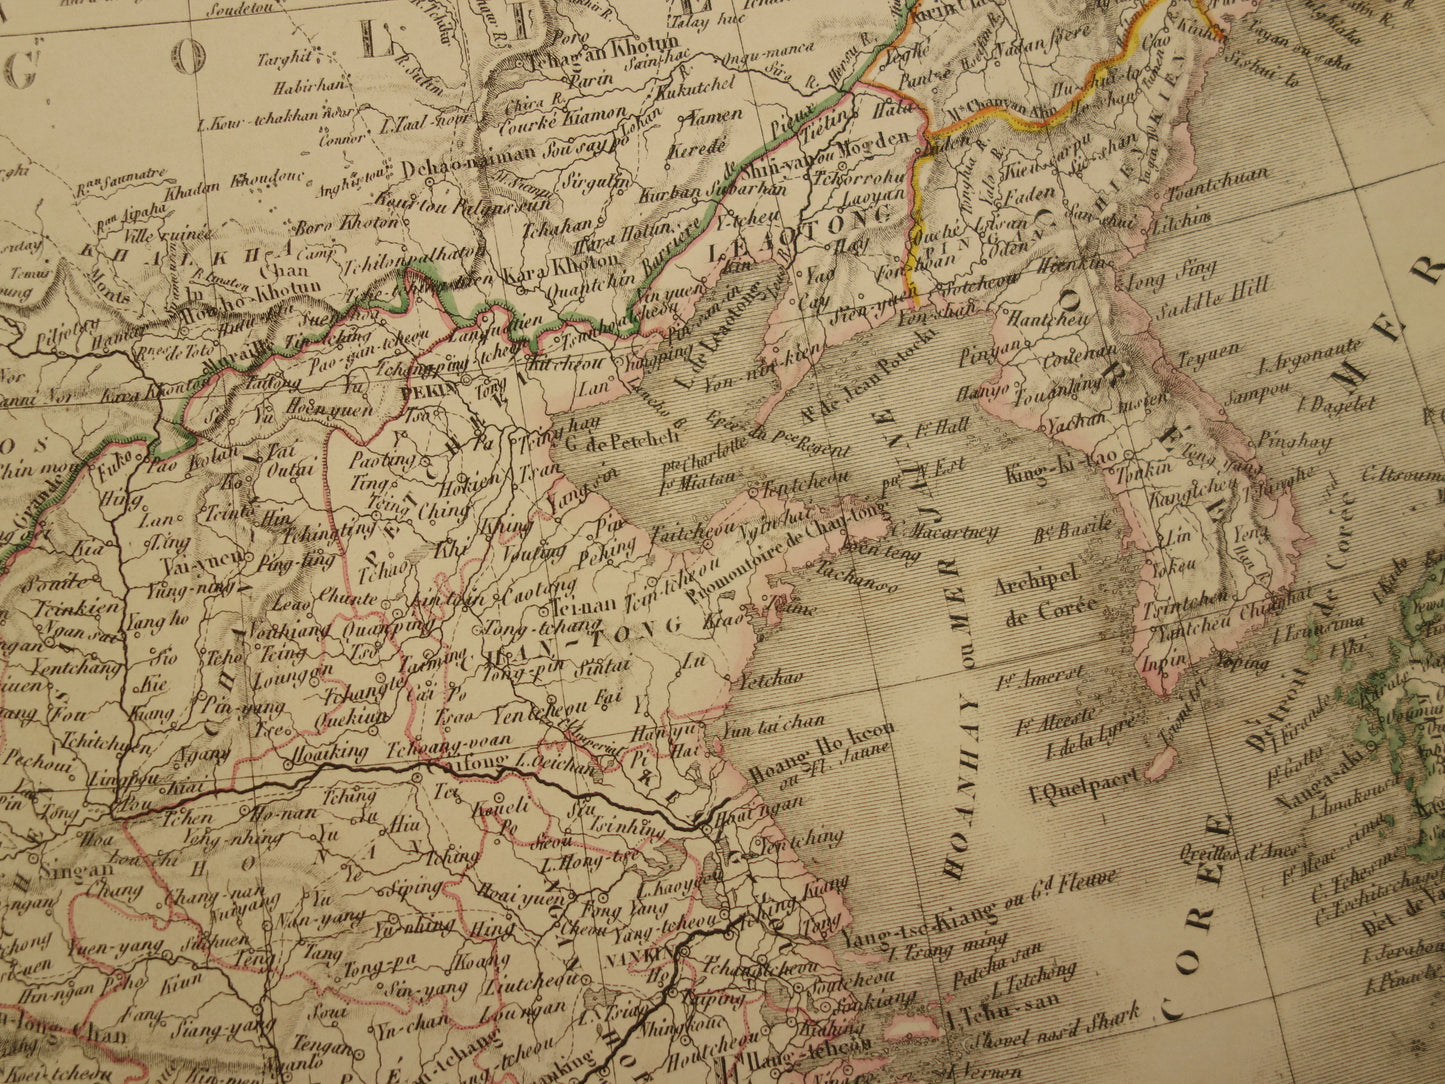 CHINA oude kaart van Chinese Rijk uit 1851 Grote antieke landkaart van Japan Korea China - originele vintage historische kaarten